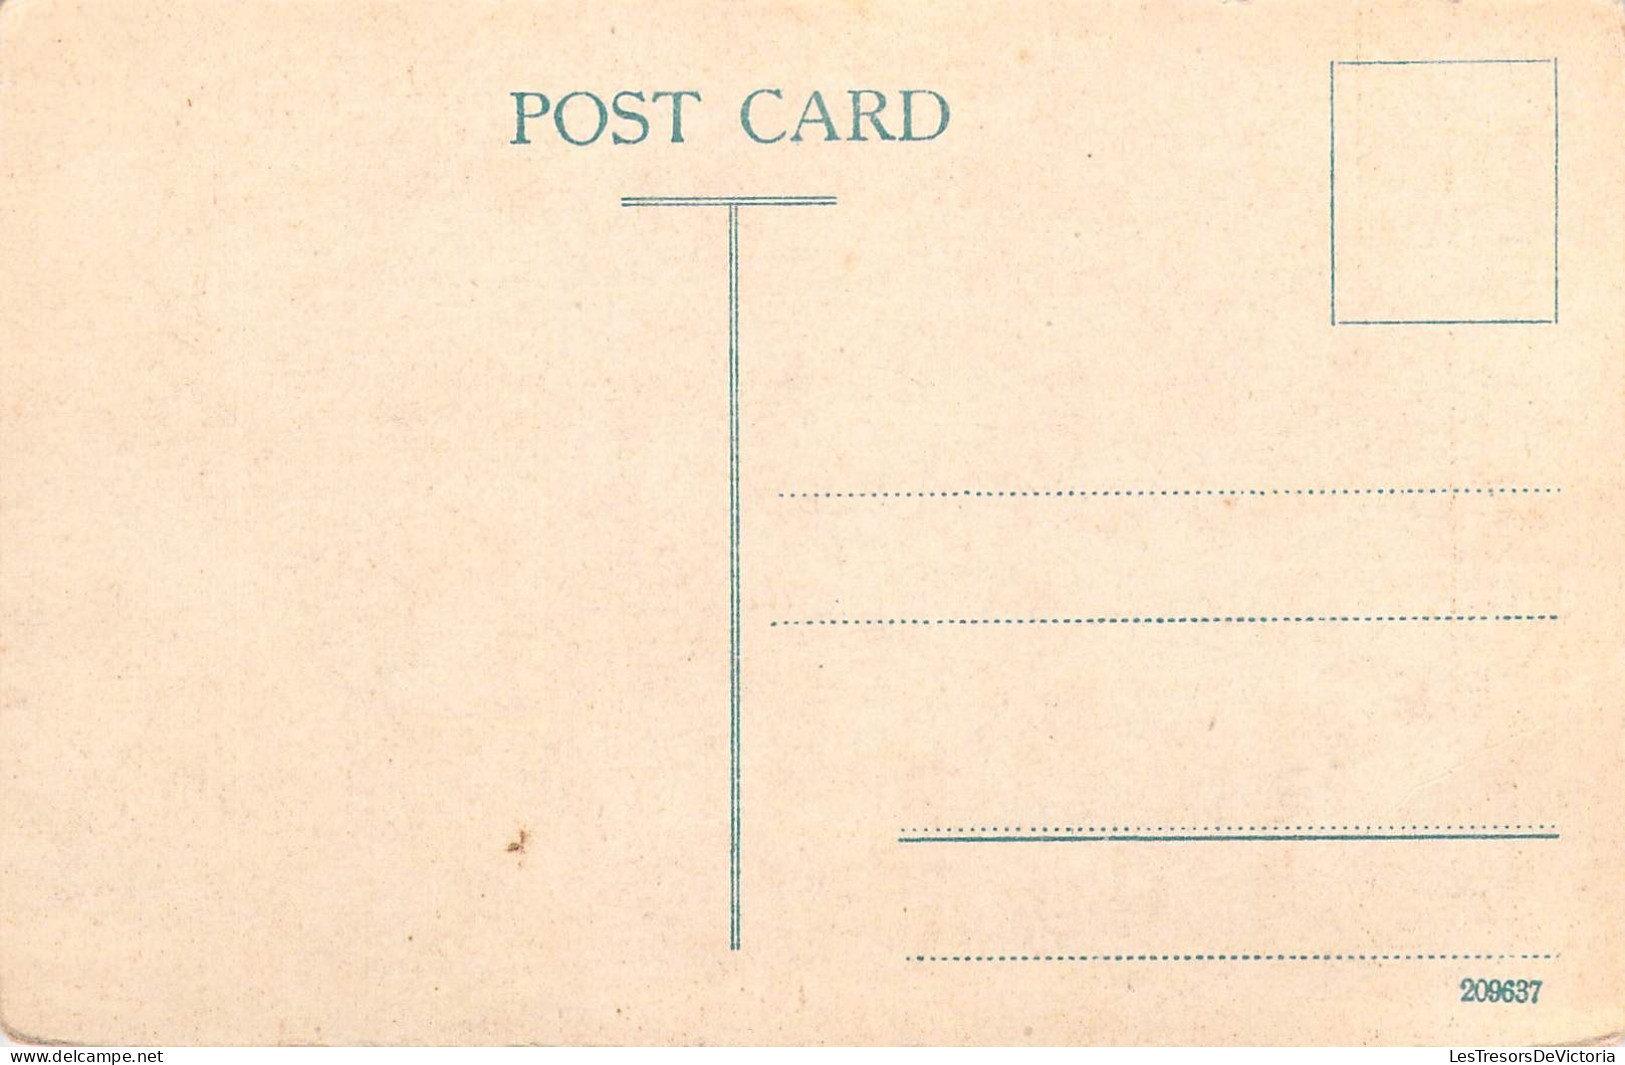 INDE - Bombay - St. Thomas Cathédral - Carte Postale Ancienne - Inde